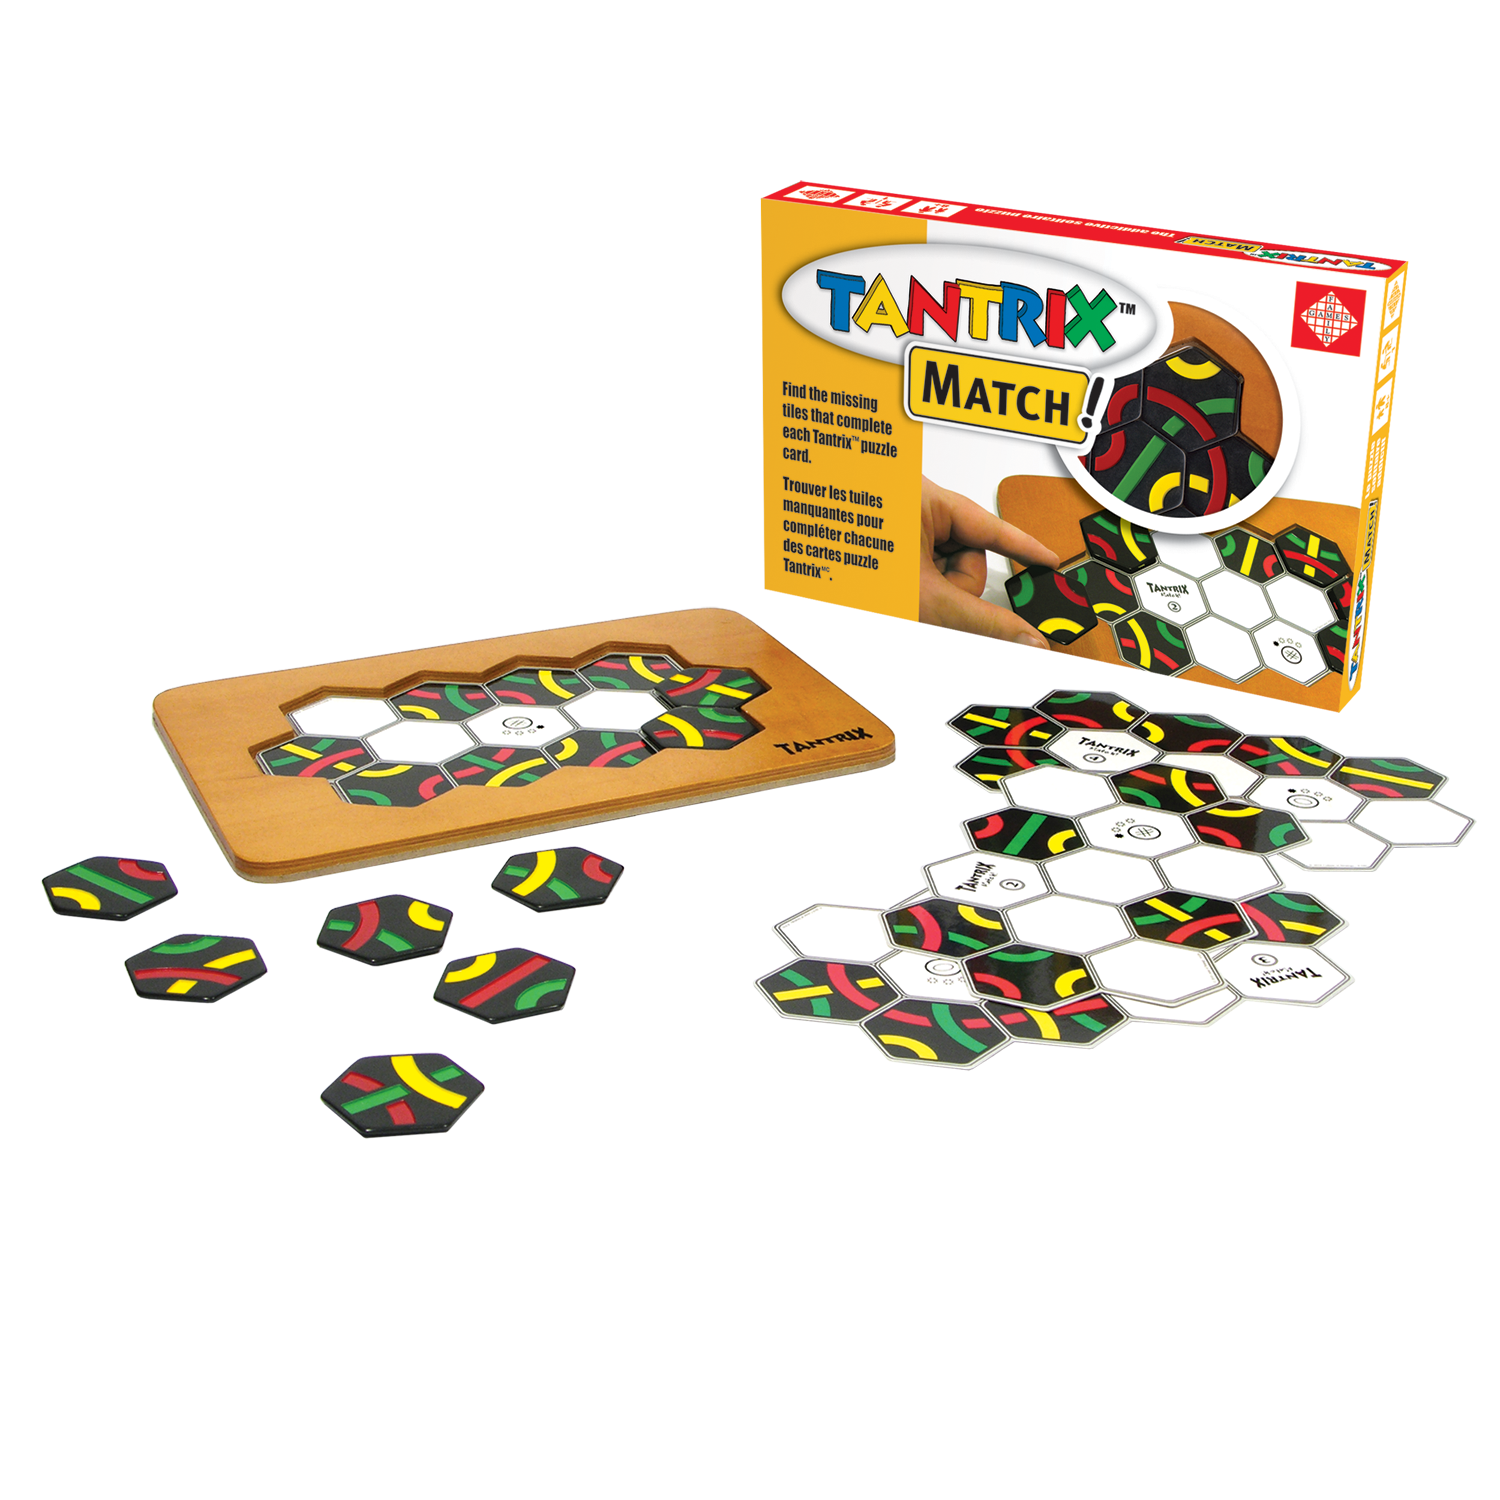 Tantrix strategy game